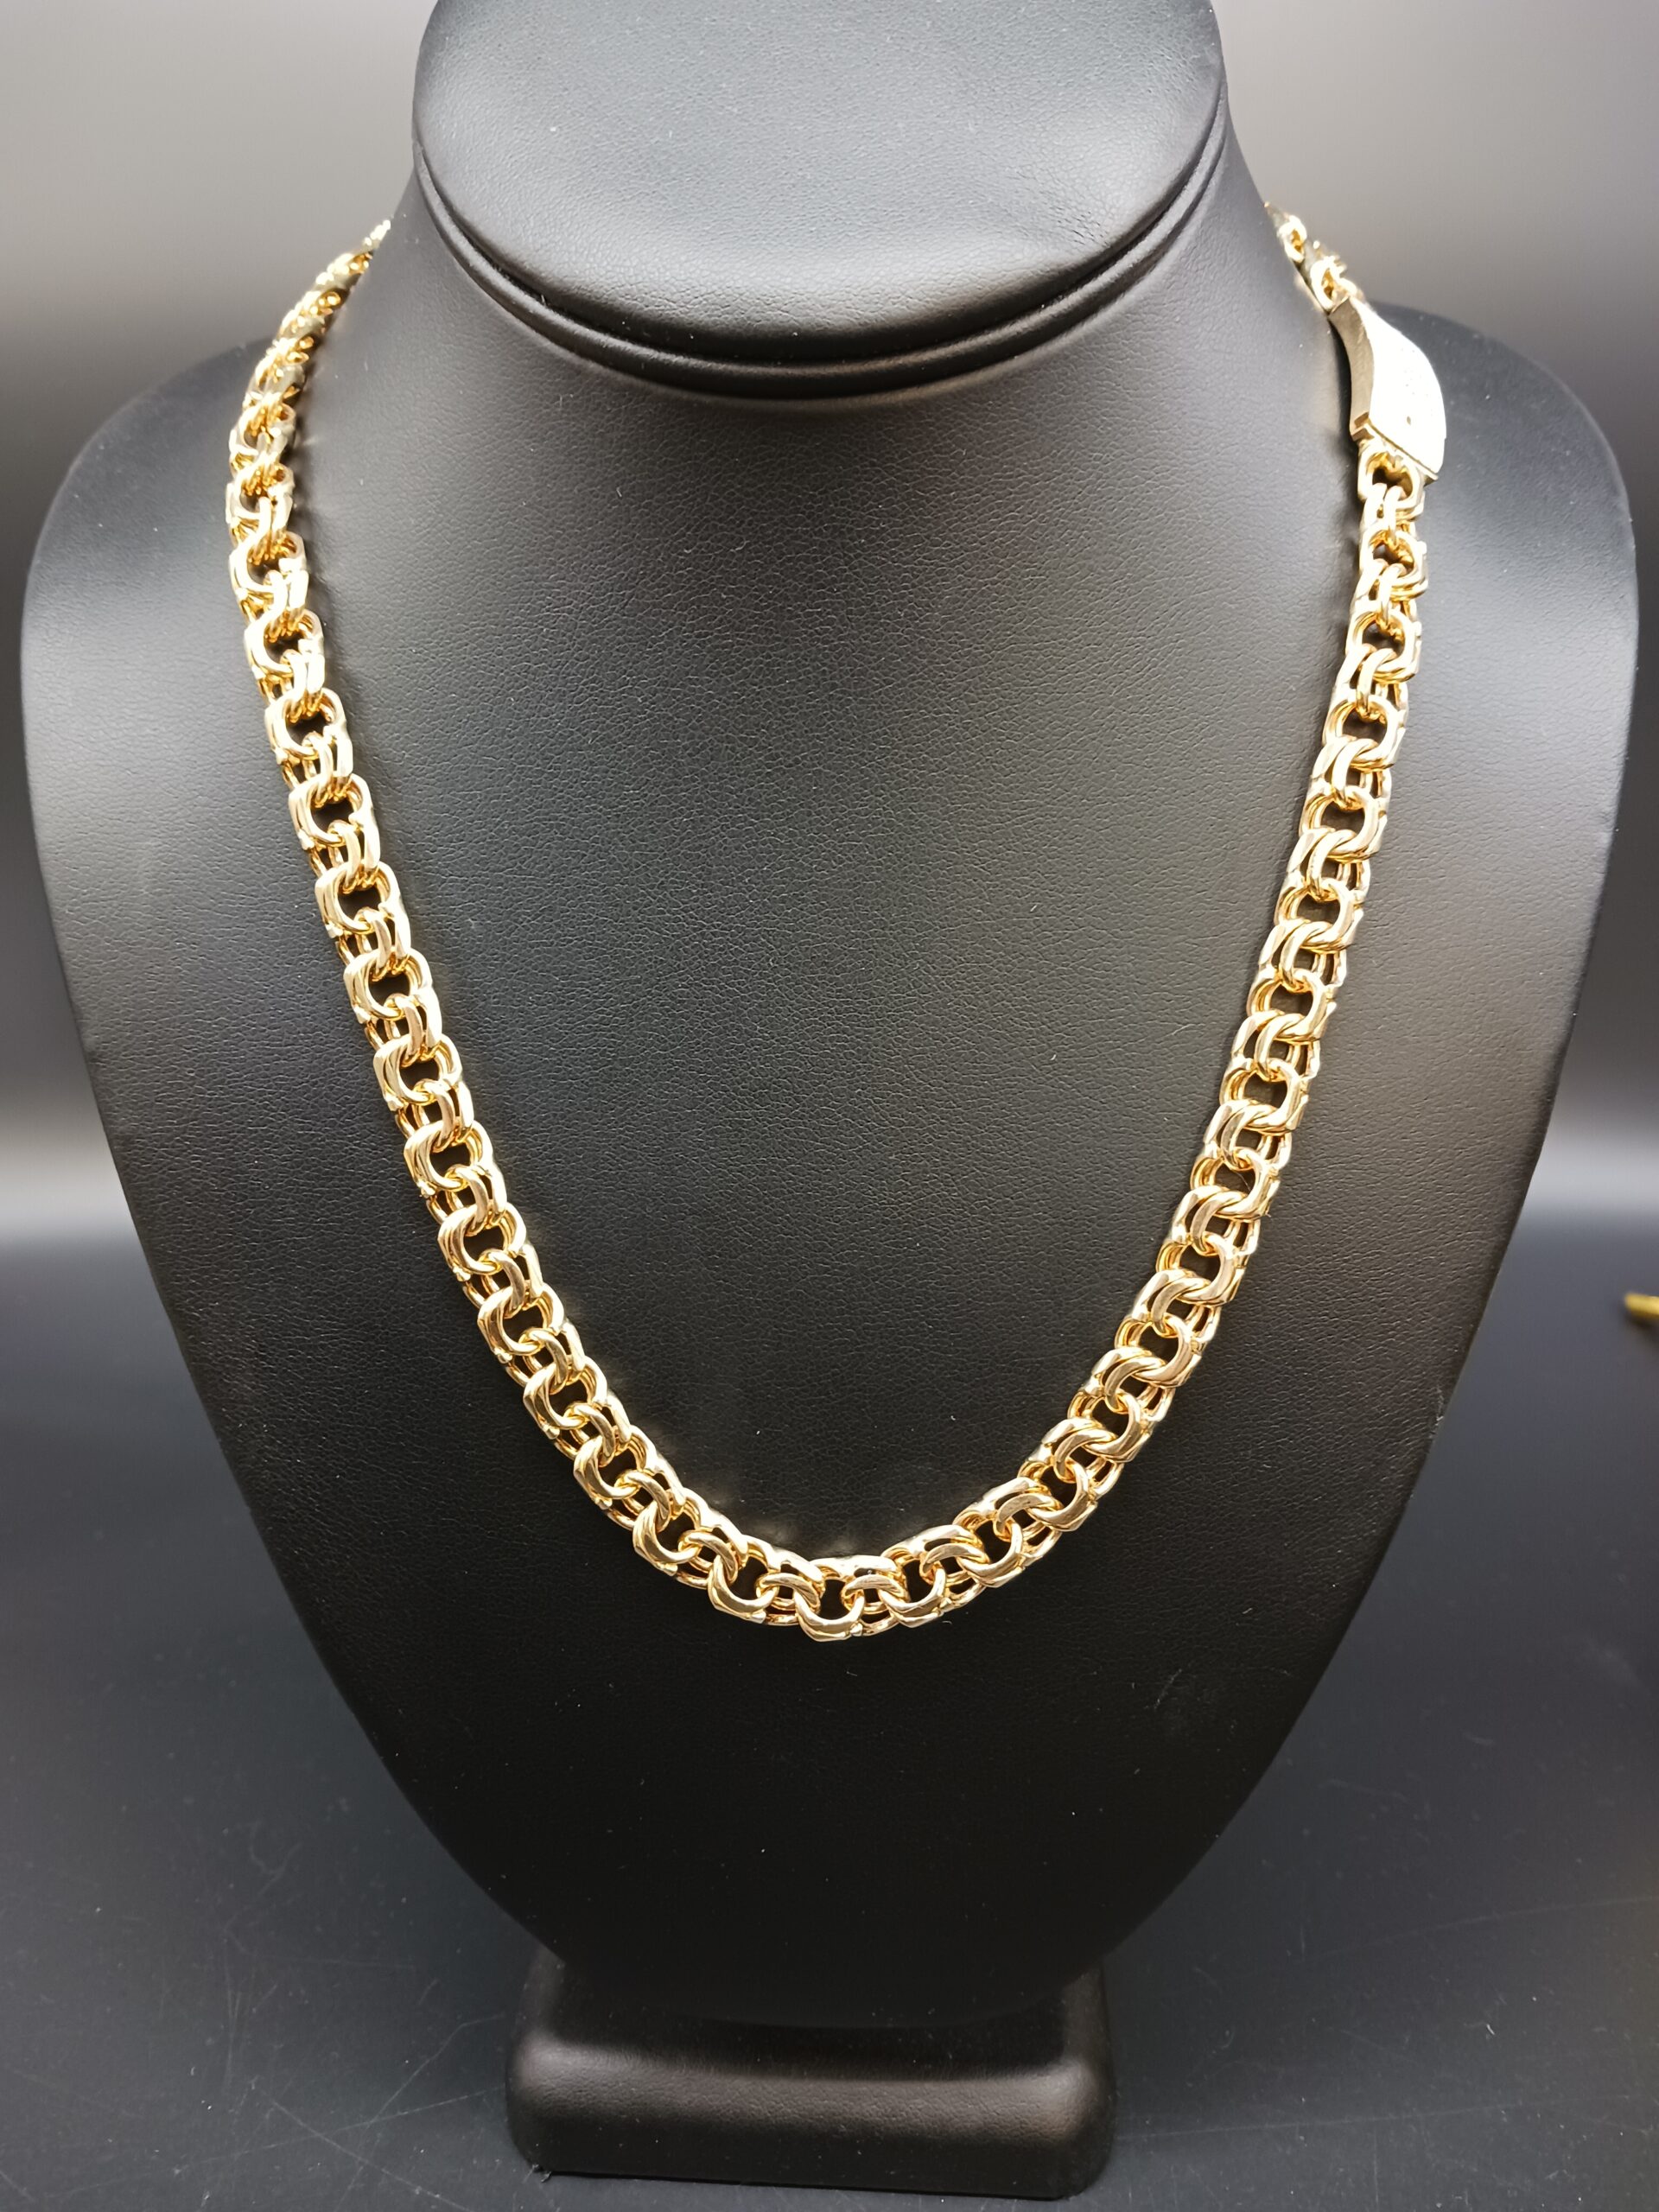 10K GOLD CHINO LINK CHAIN - Tamayo's Jewelry